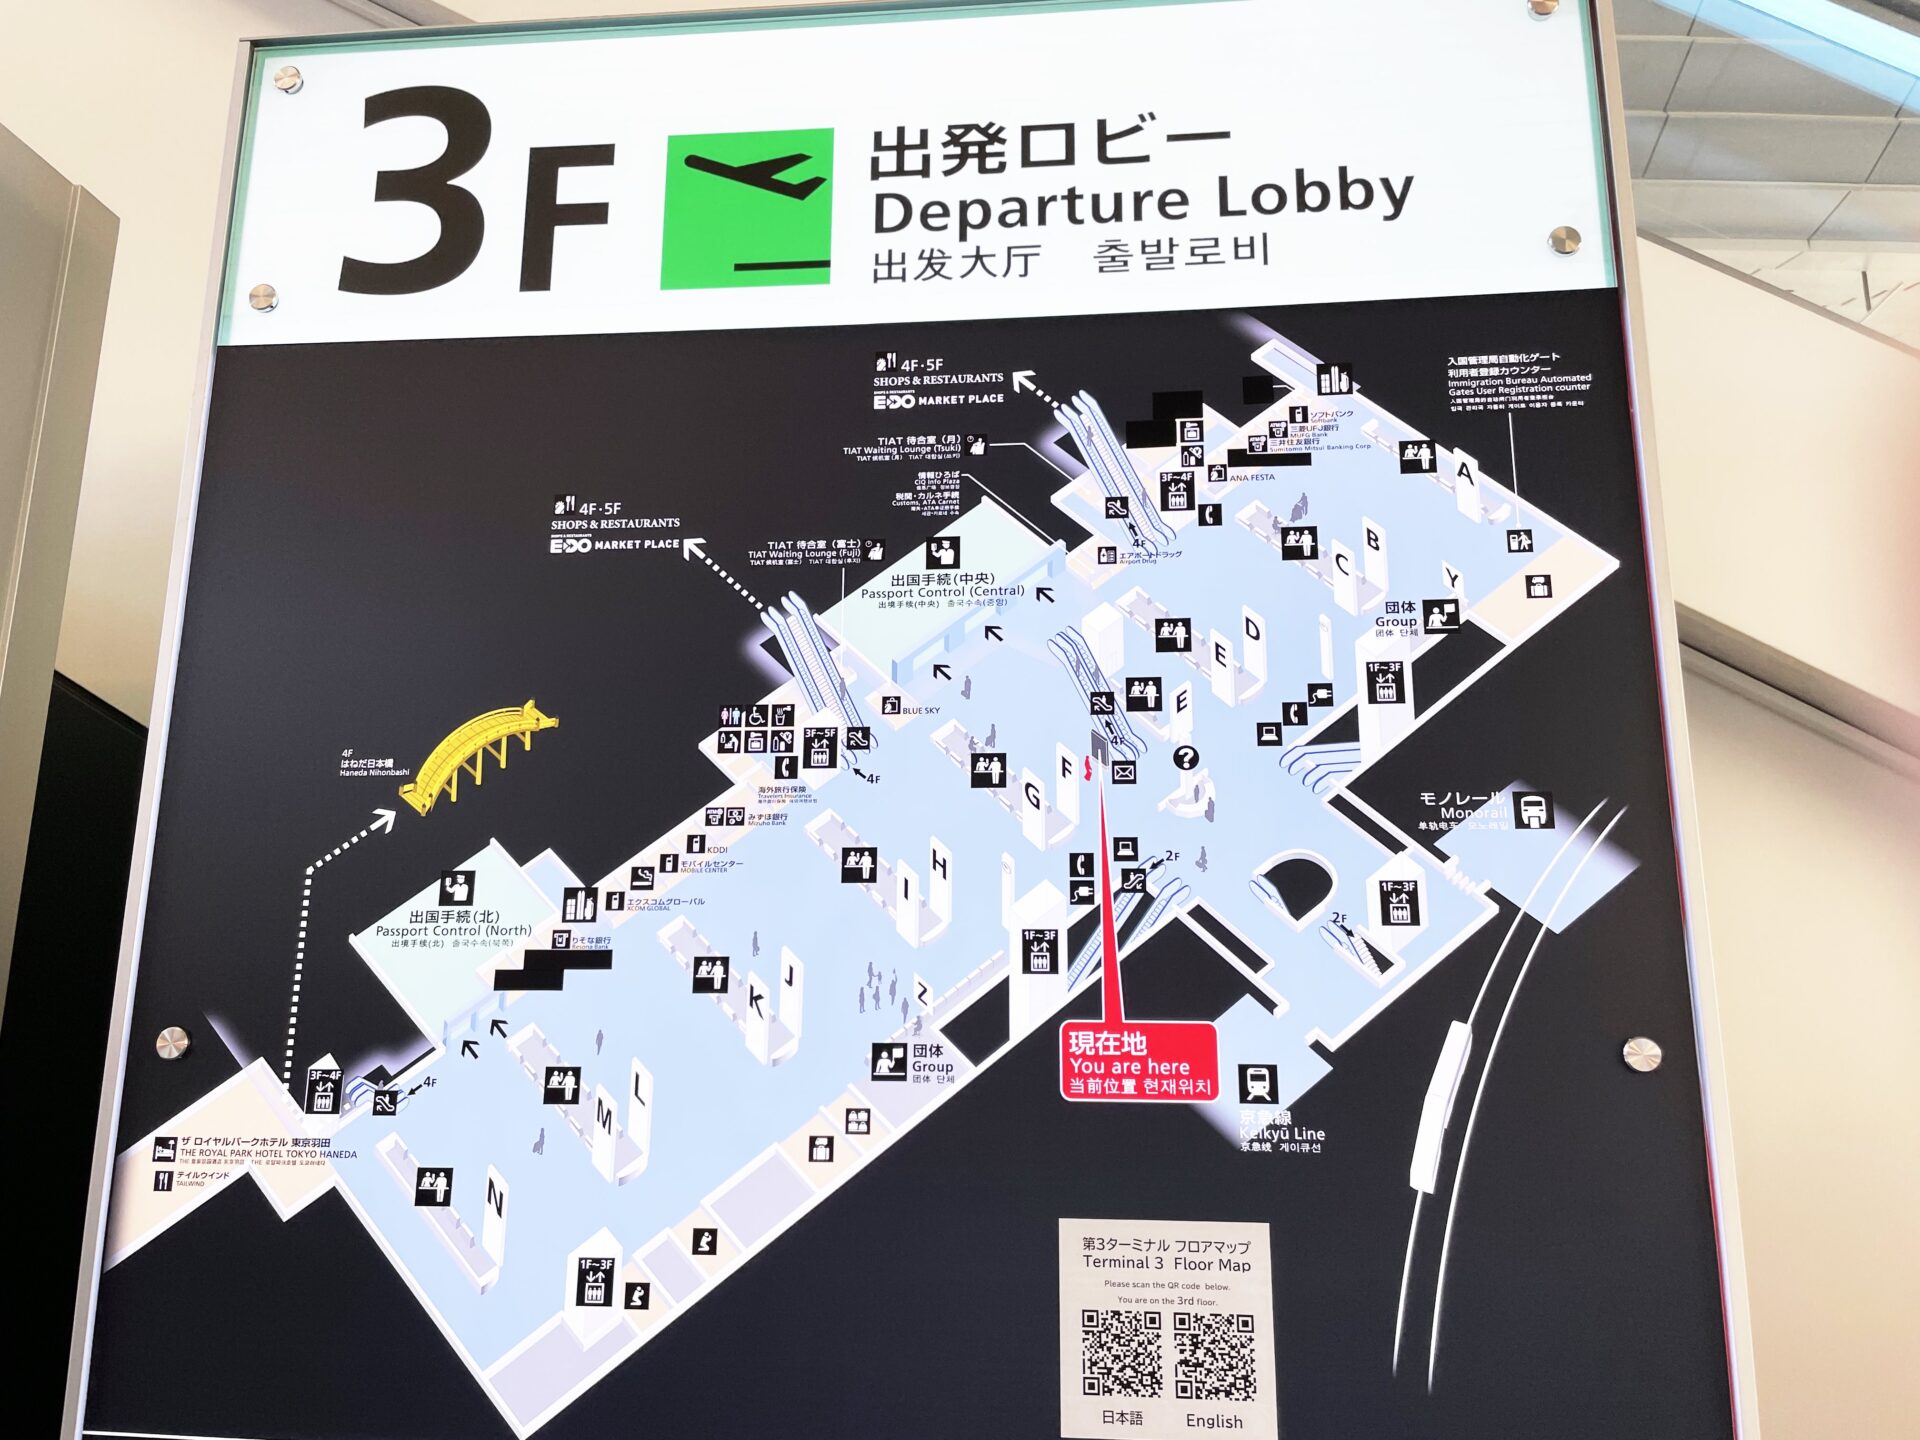 羽田空港国際線のチェックインカウンターの場所